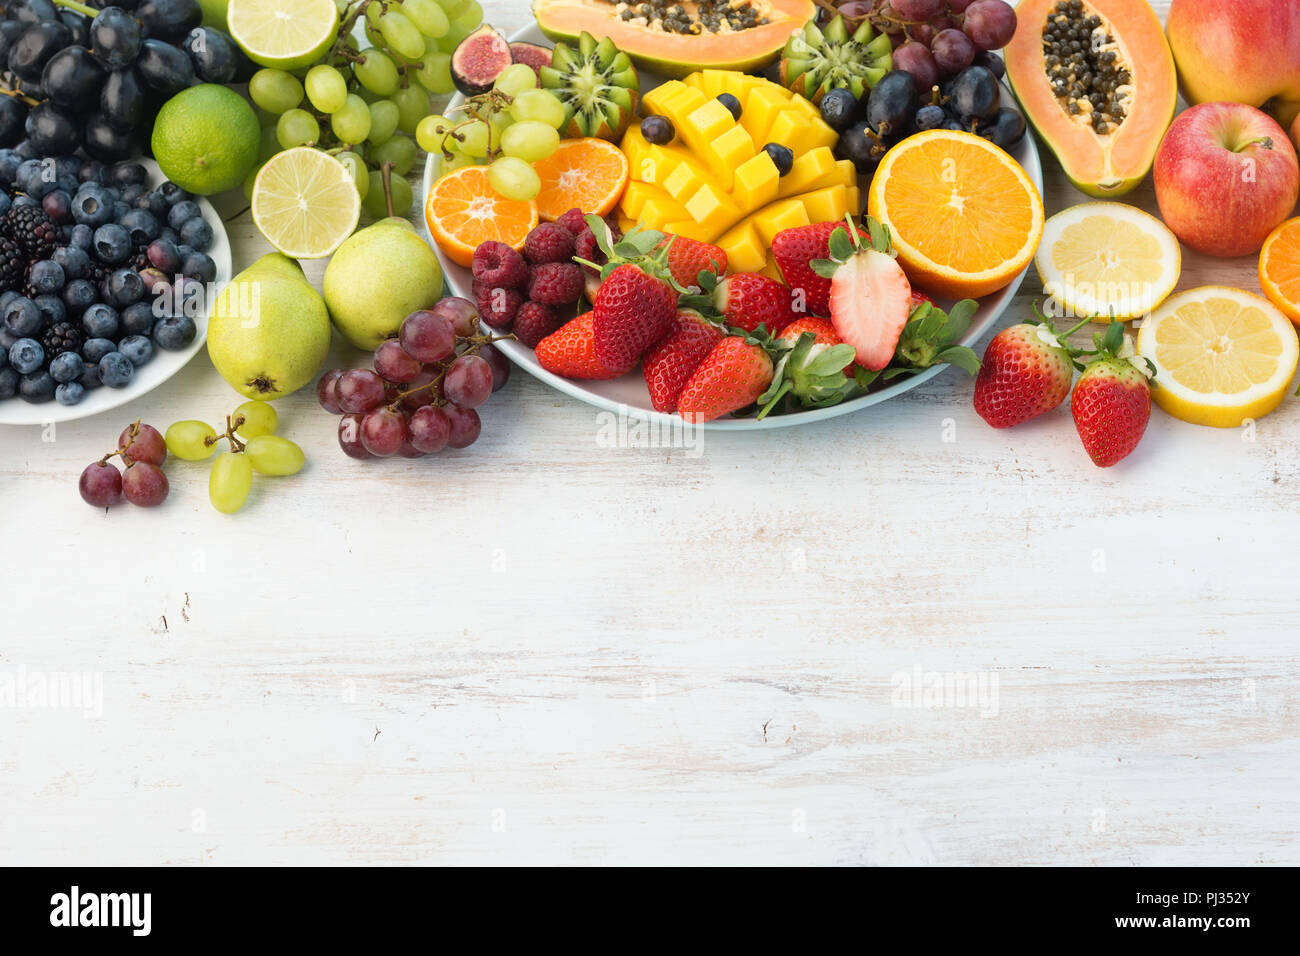 Les fruits et légumes frais en couleurs arc-en-ciel sur le tableau blanc, l'espace de copie, selective focus Banque D'Images